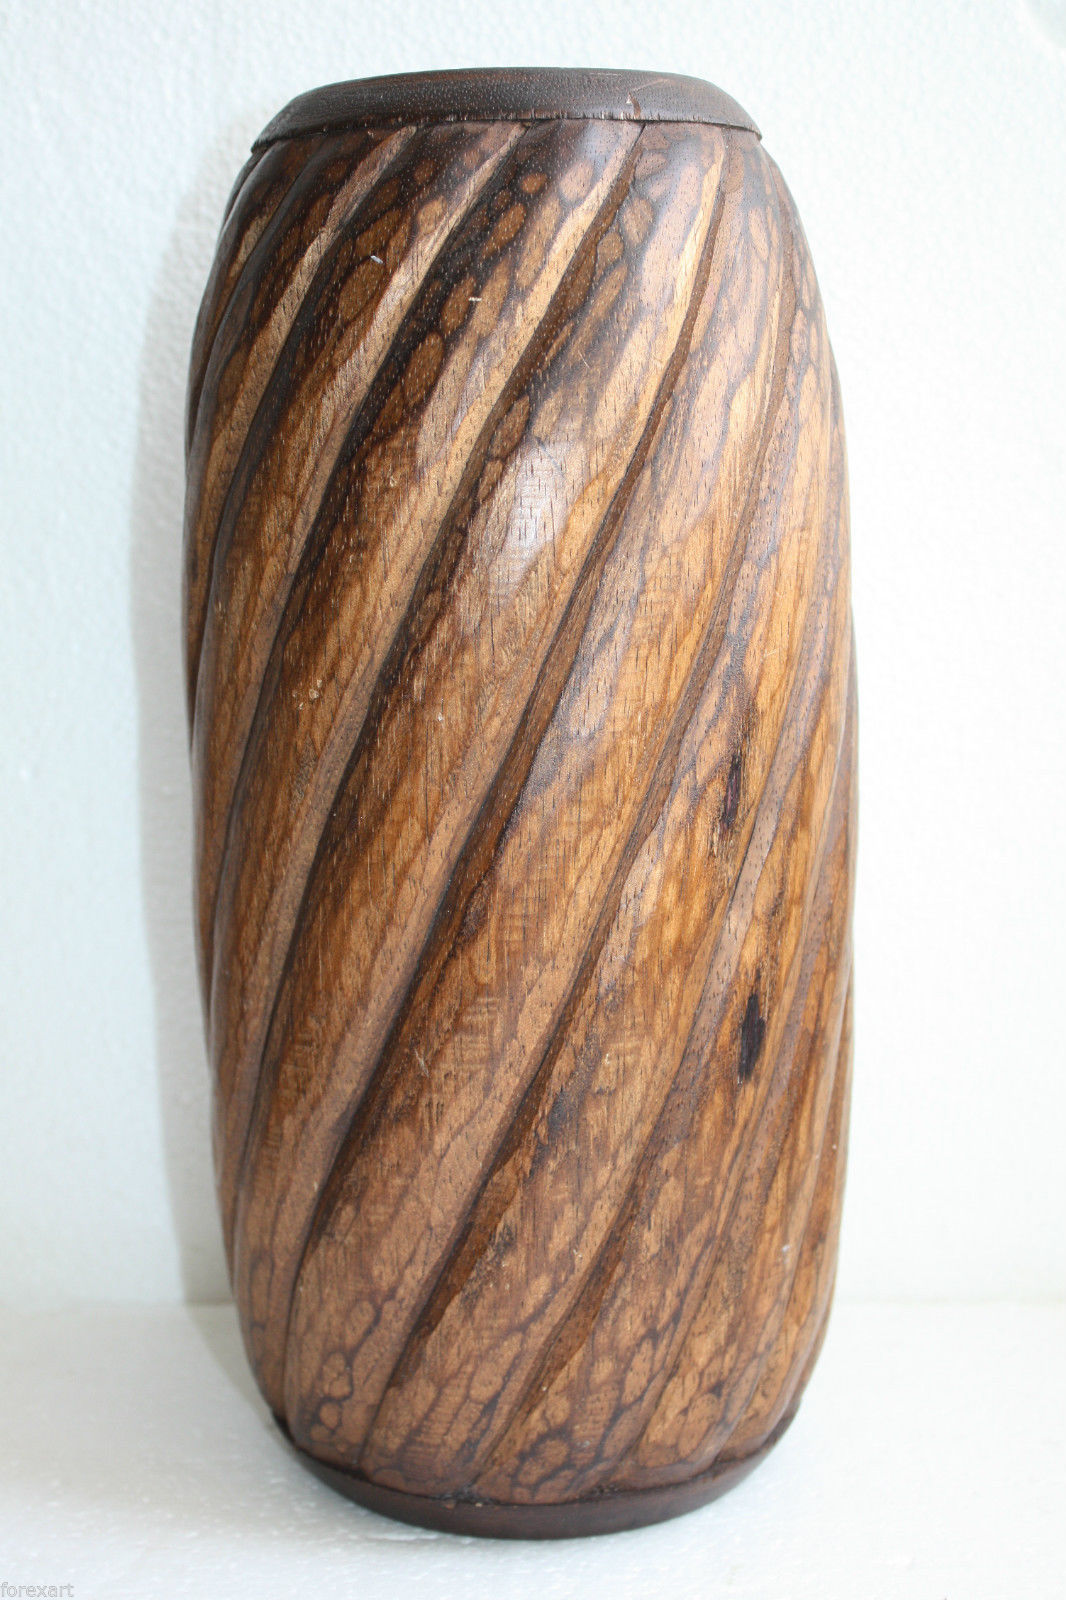 Antique Wooden Hand Carved Decorative Walnut Urn Planter Pot Vase Rustic 14" - $110.25